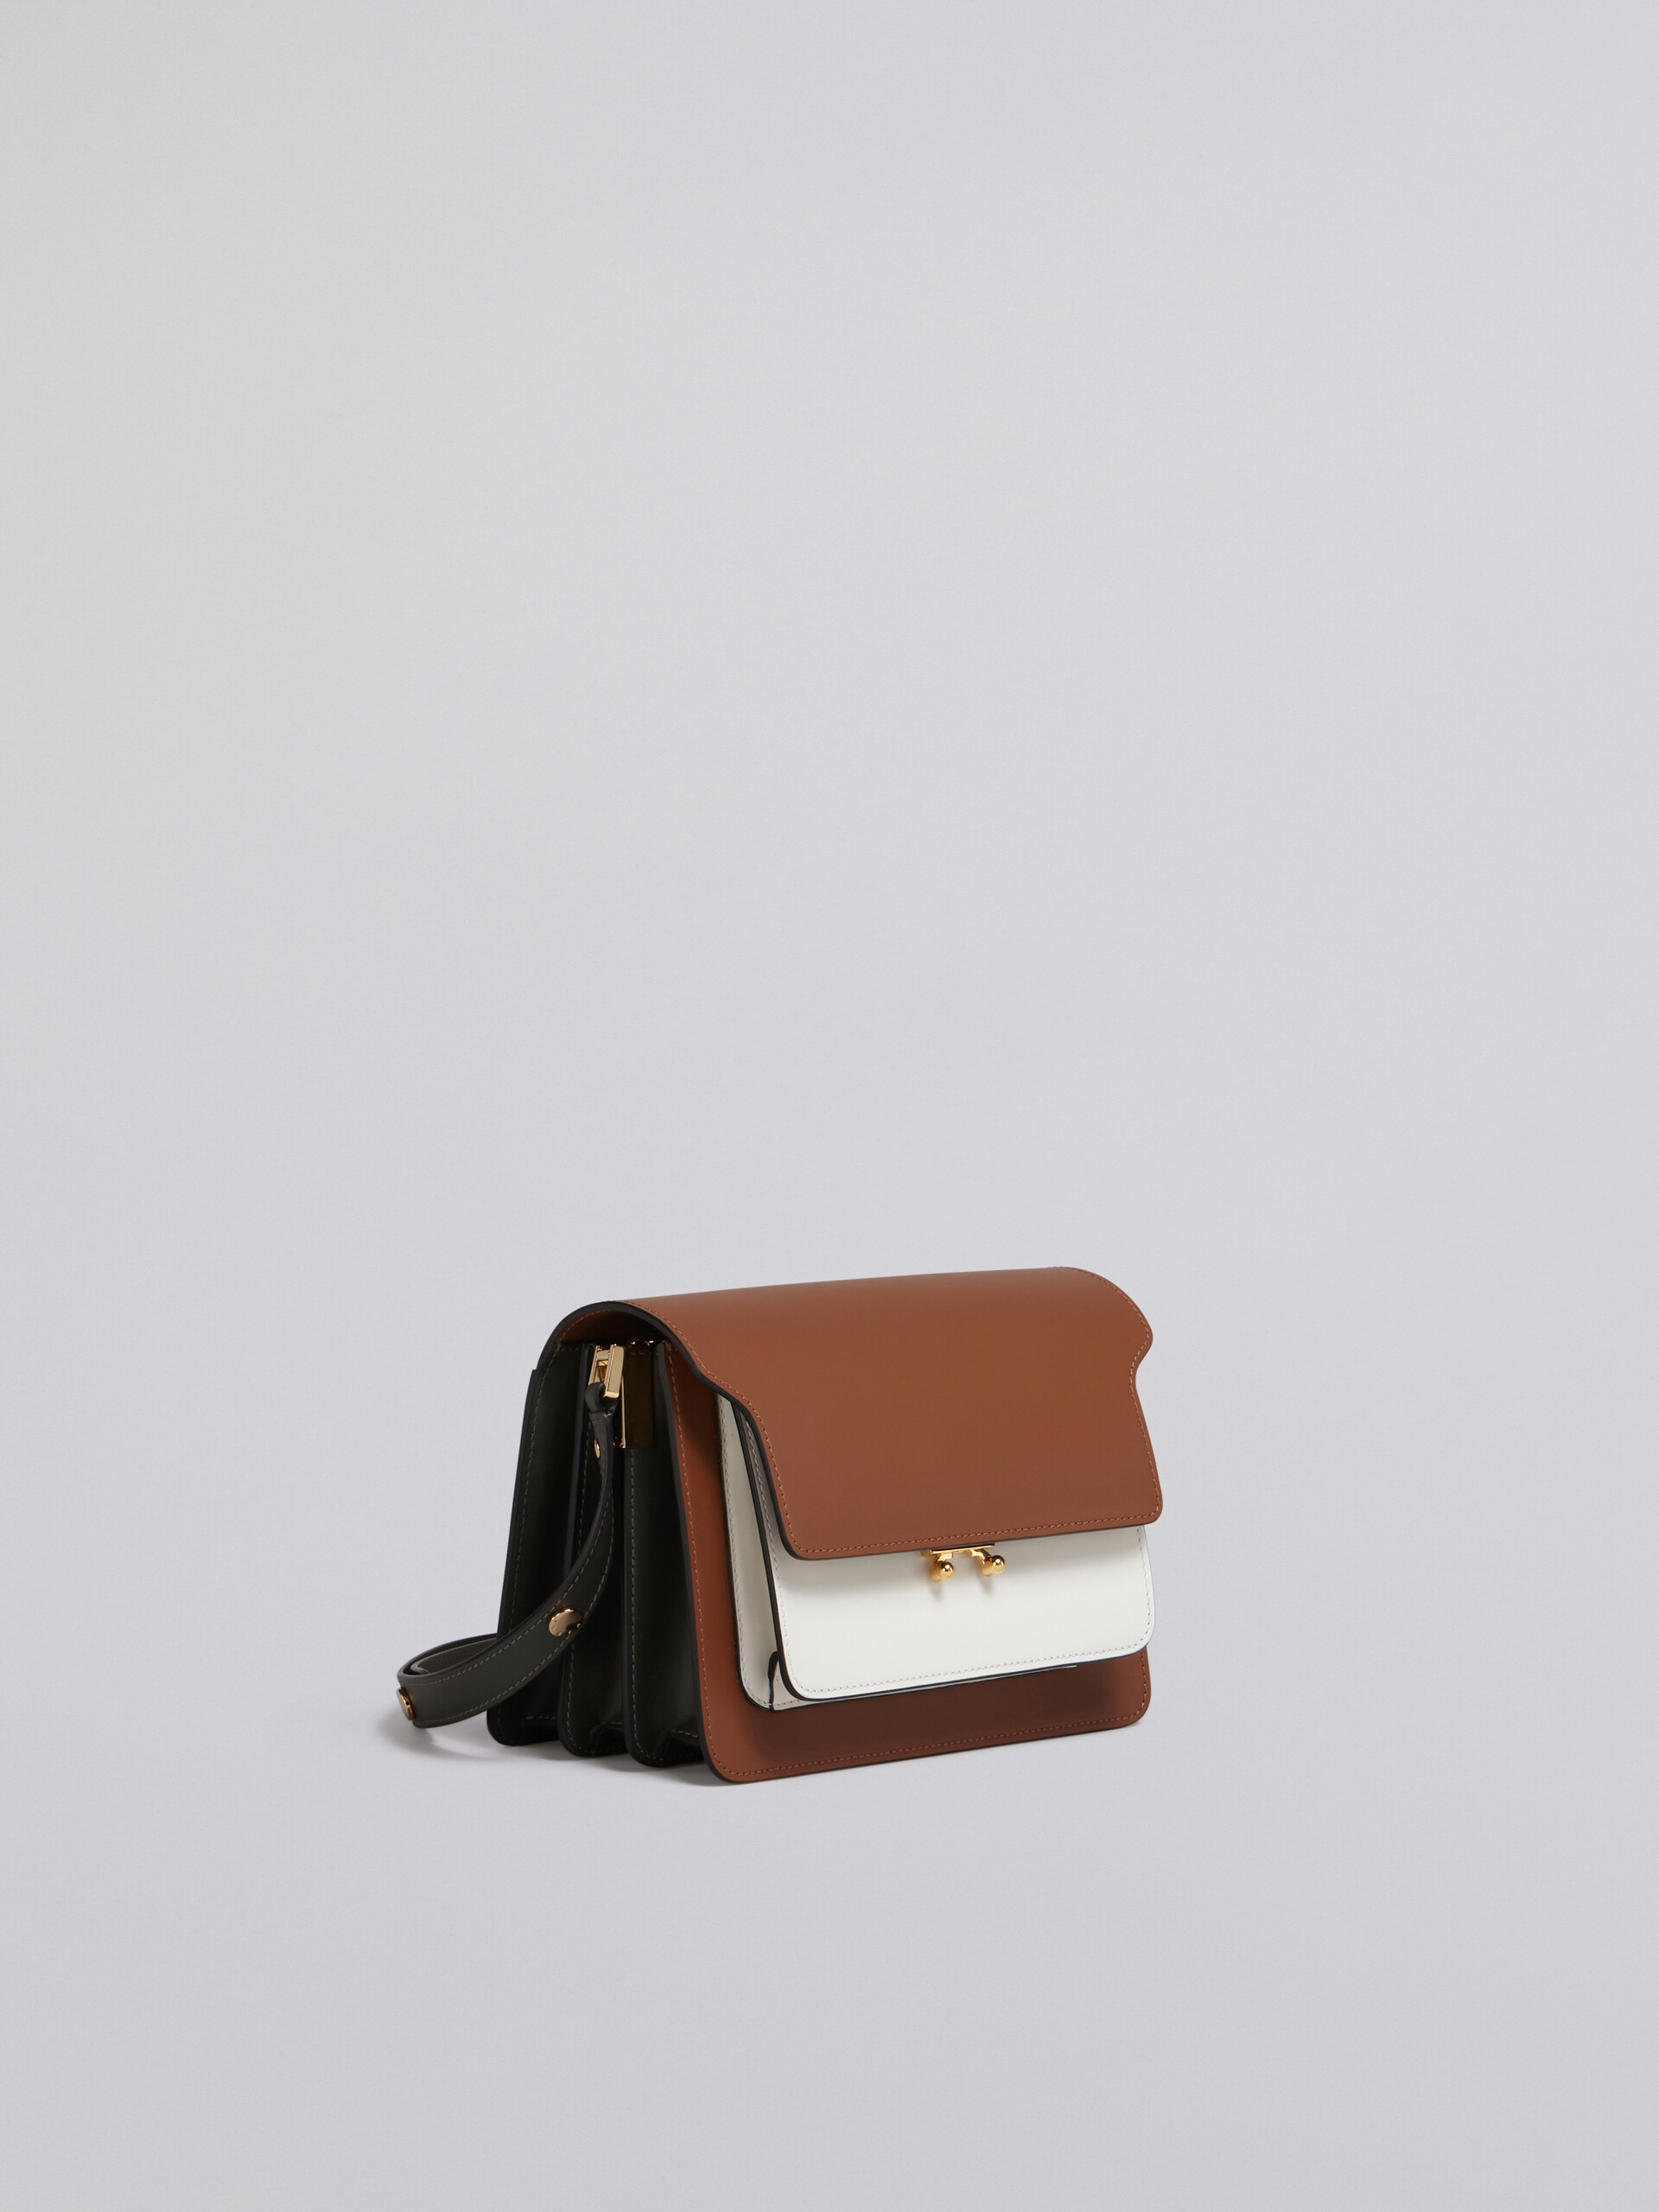 TRUNK bag in vitello tricolore - Borse a spalla - Image 4